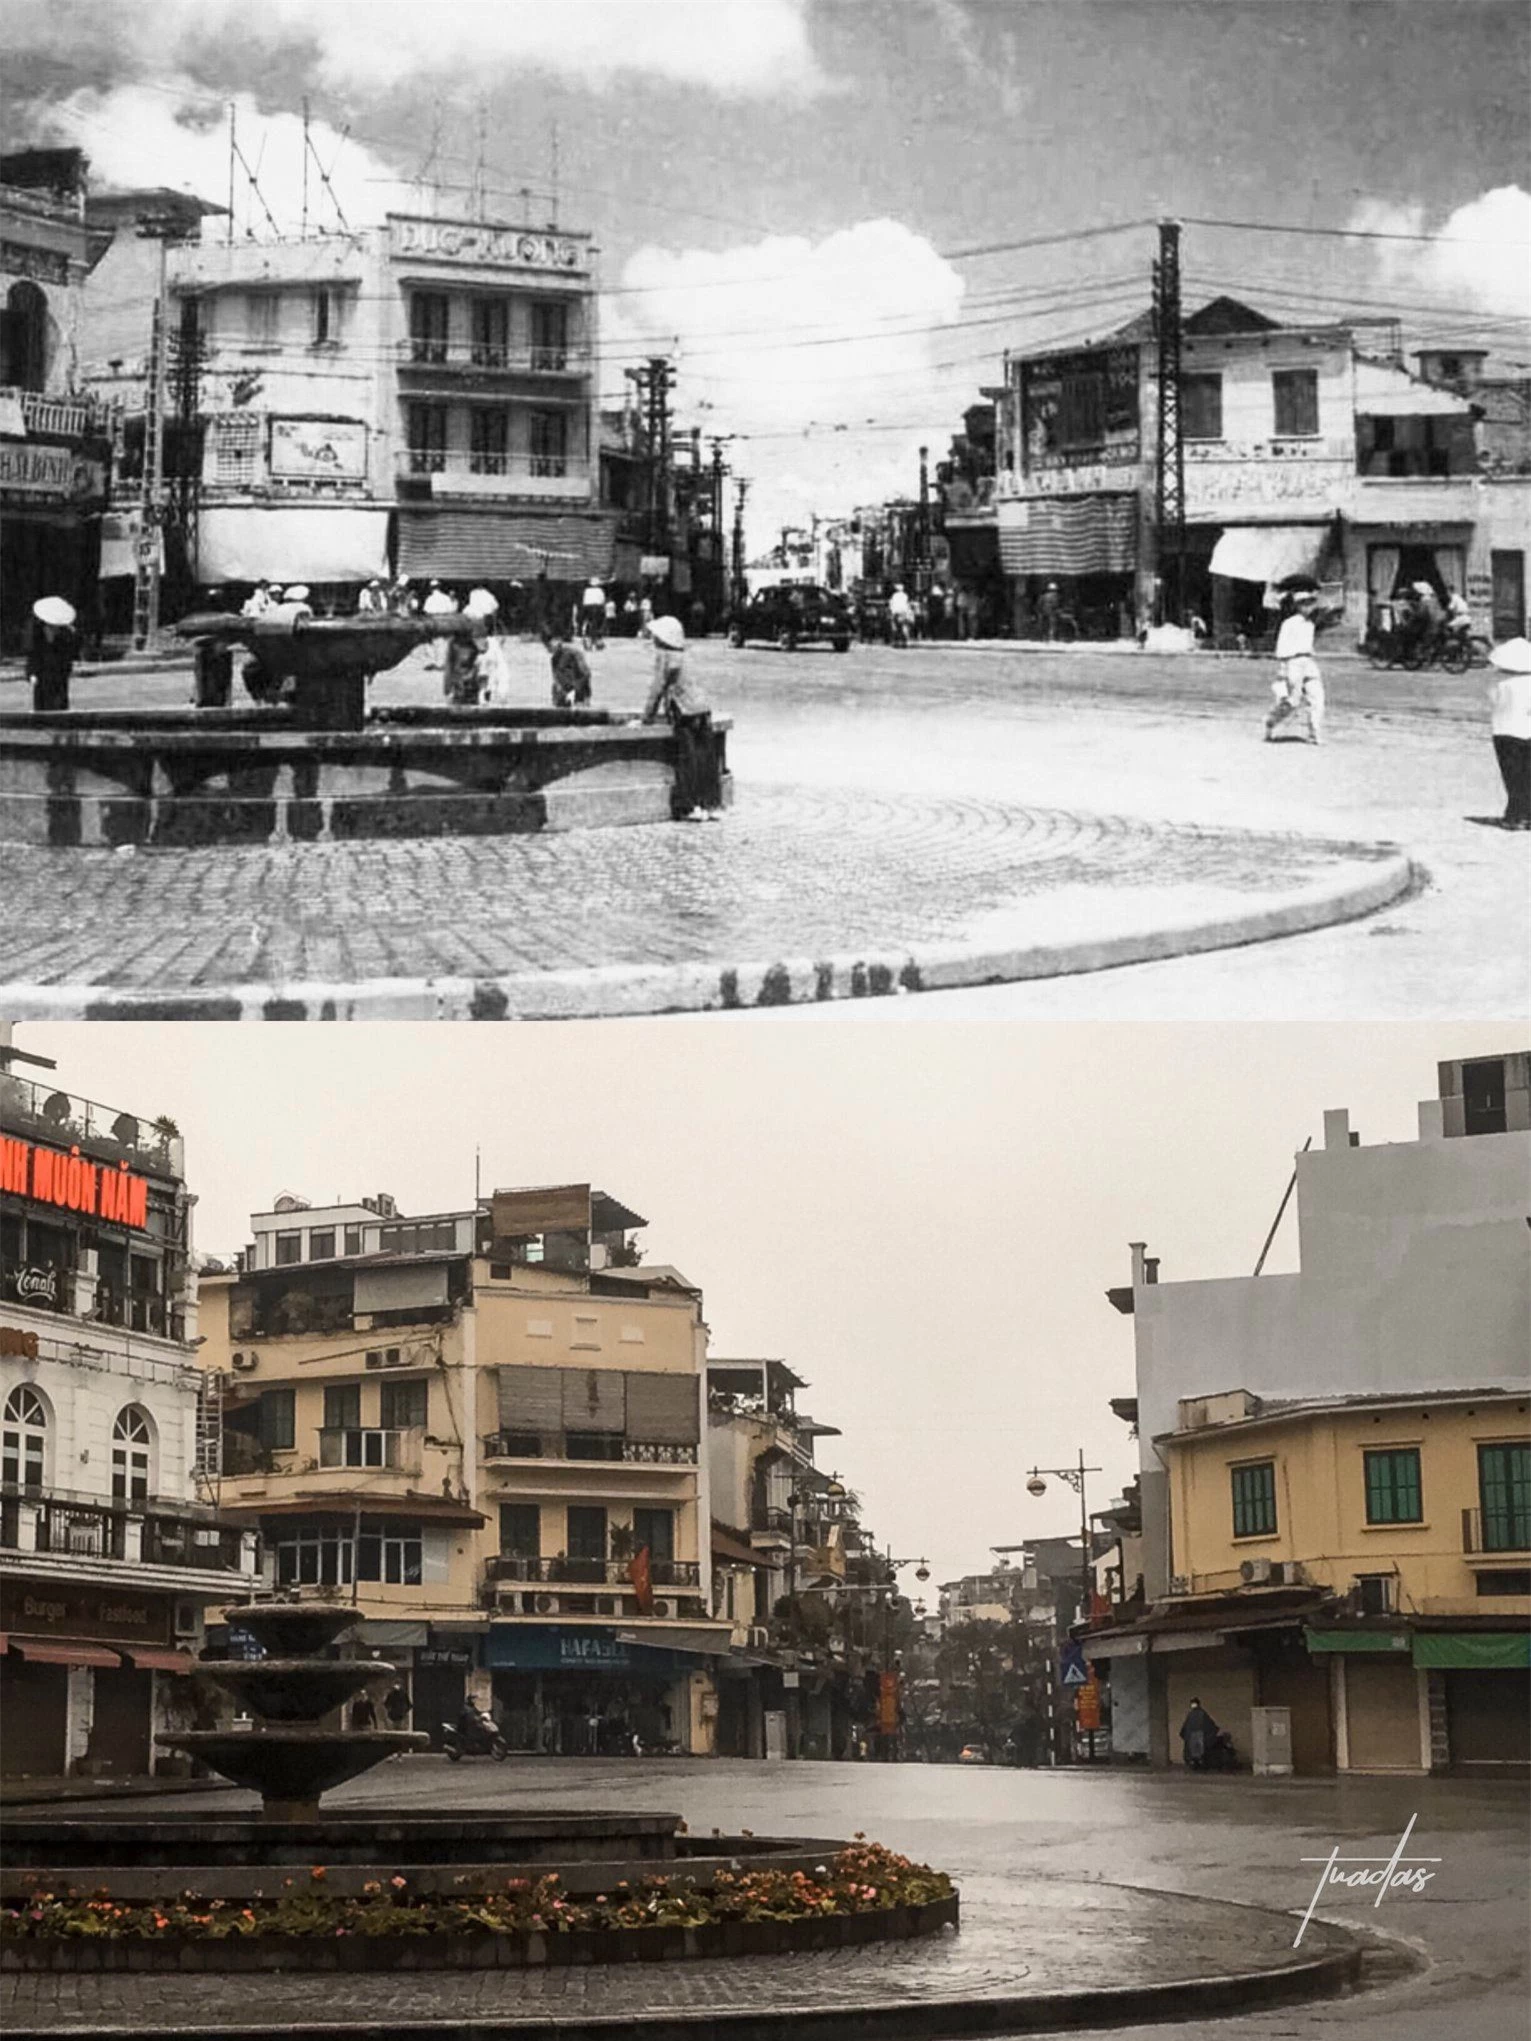 Chàng trai 25 tuổi dành 7 năm chụp bộ ảnh Hà Nội 100 năm trước: Vì thời gian là thứ không thể lấy lại được  - Ảnh 1.